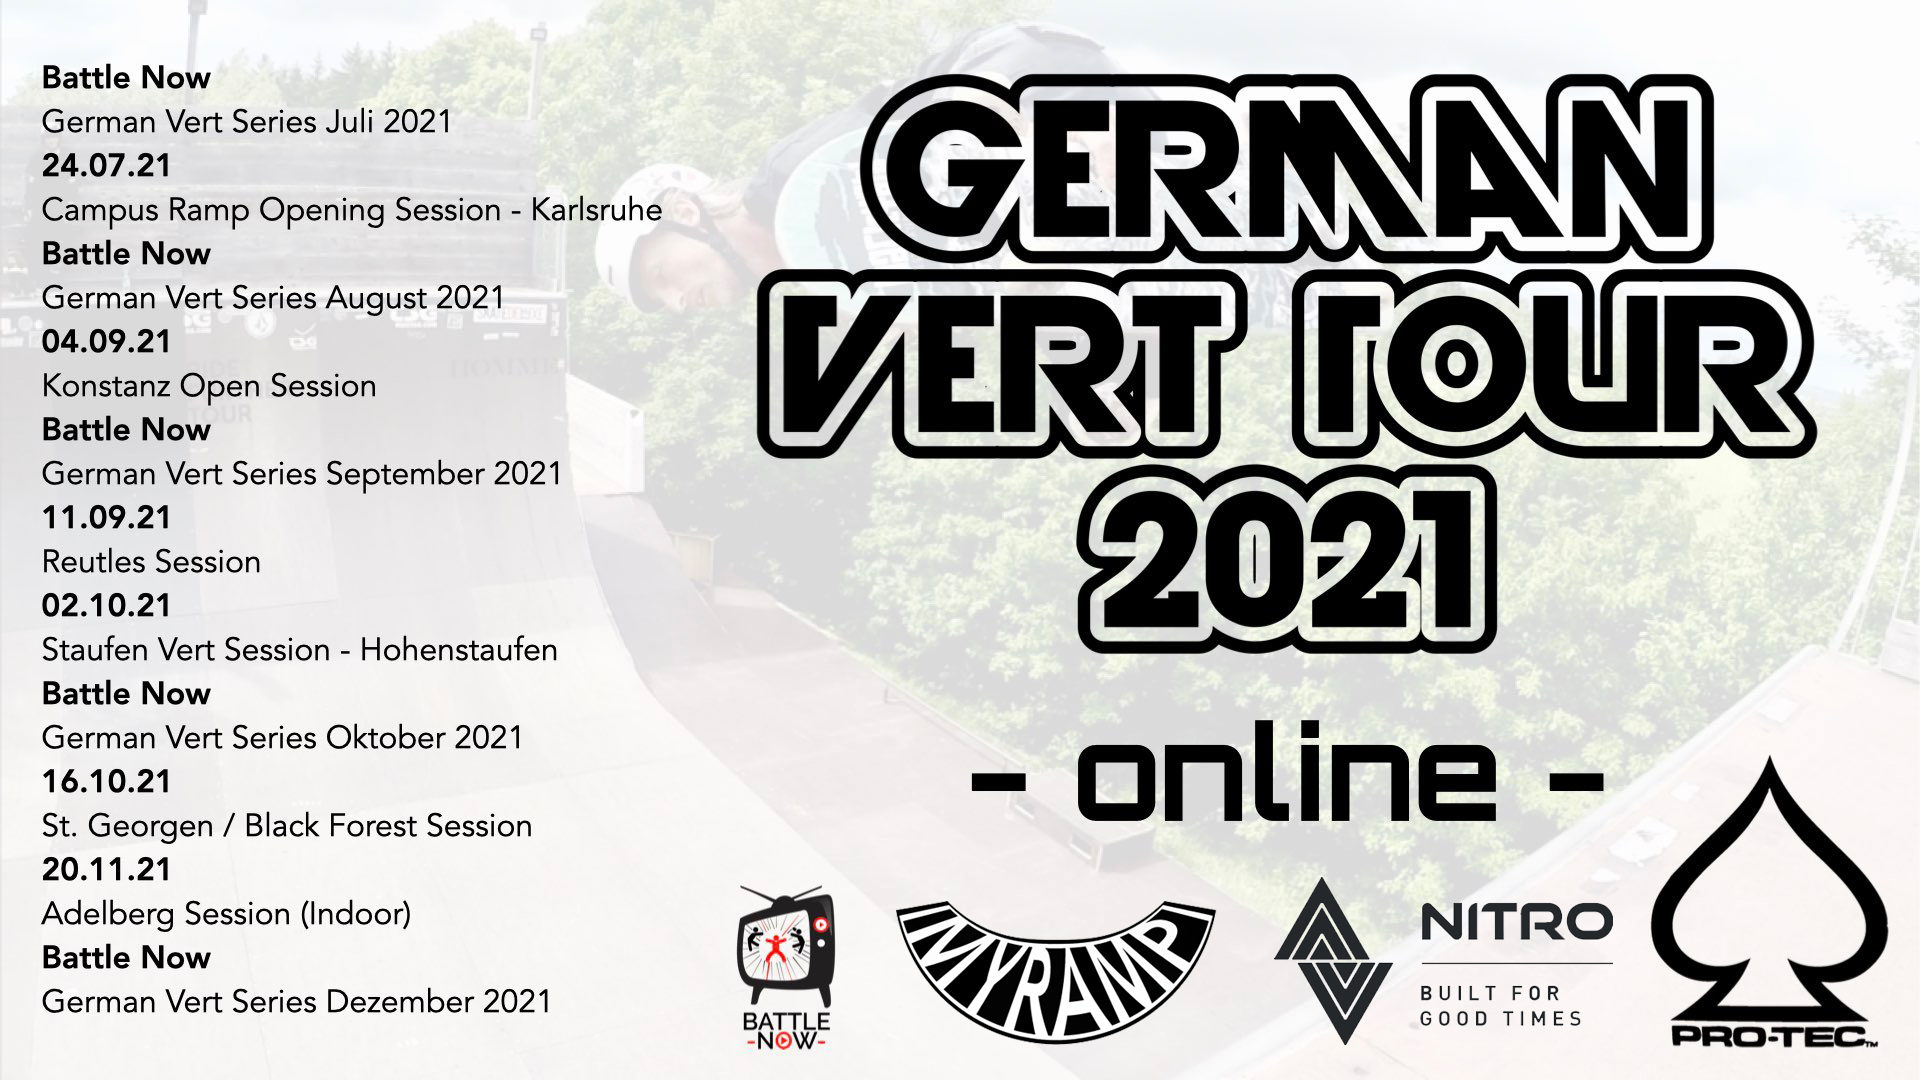 German Vert Series August 2021